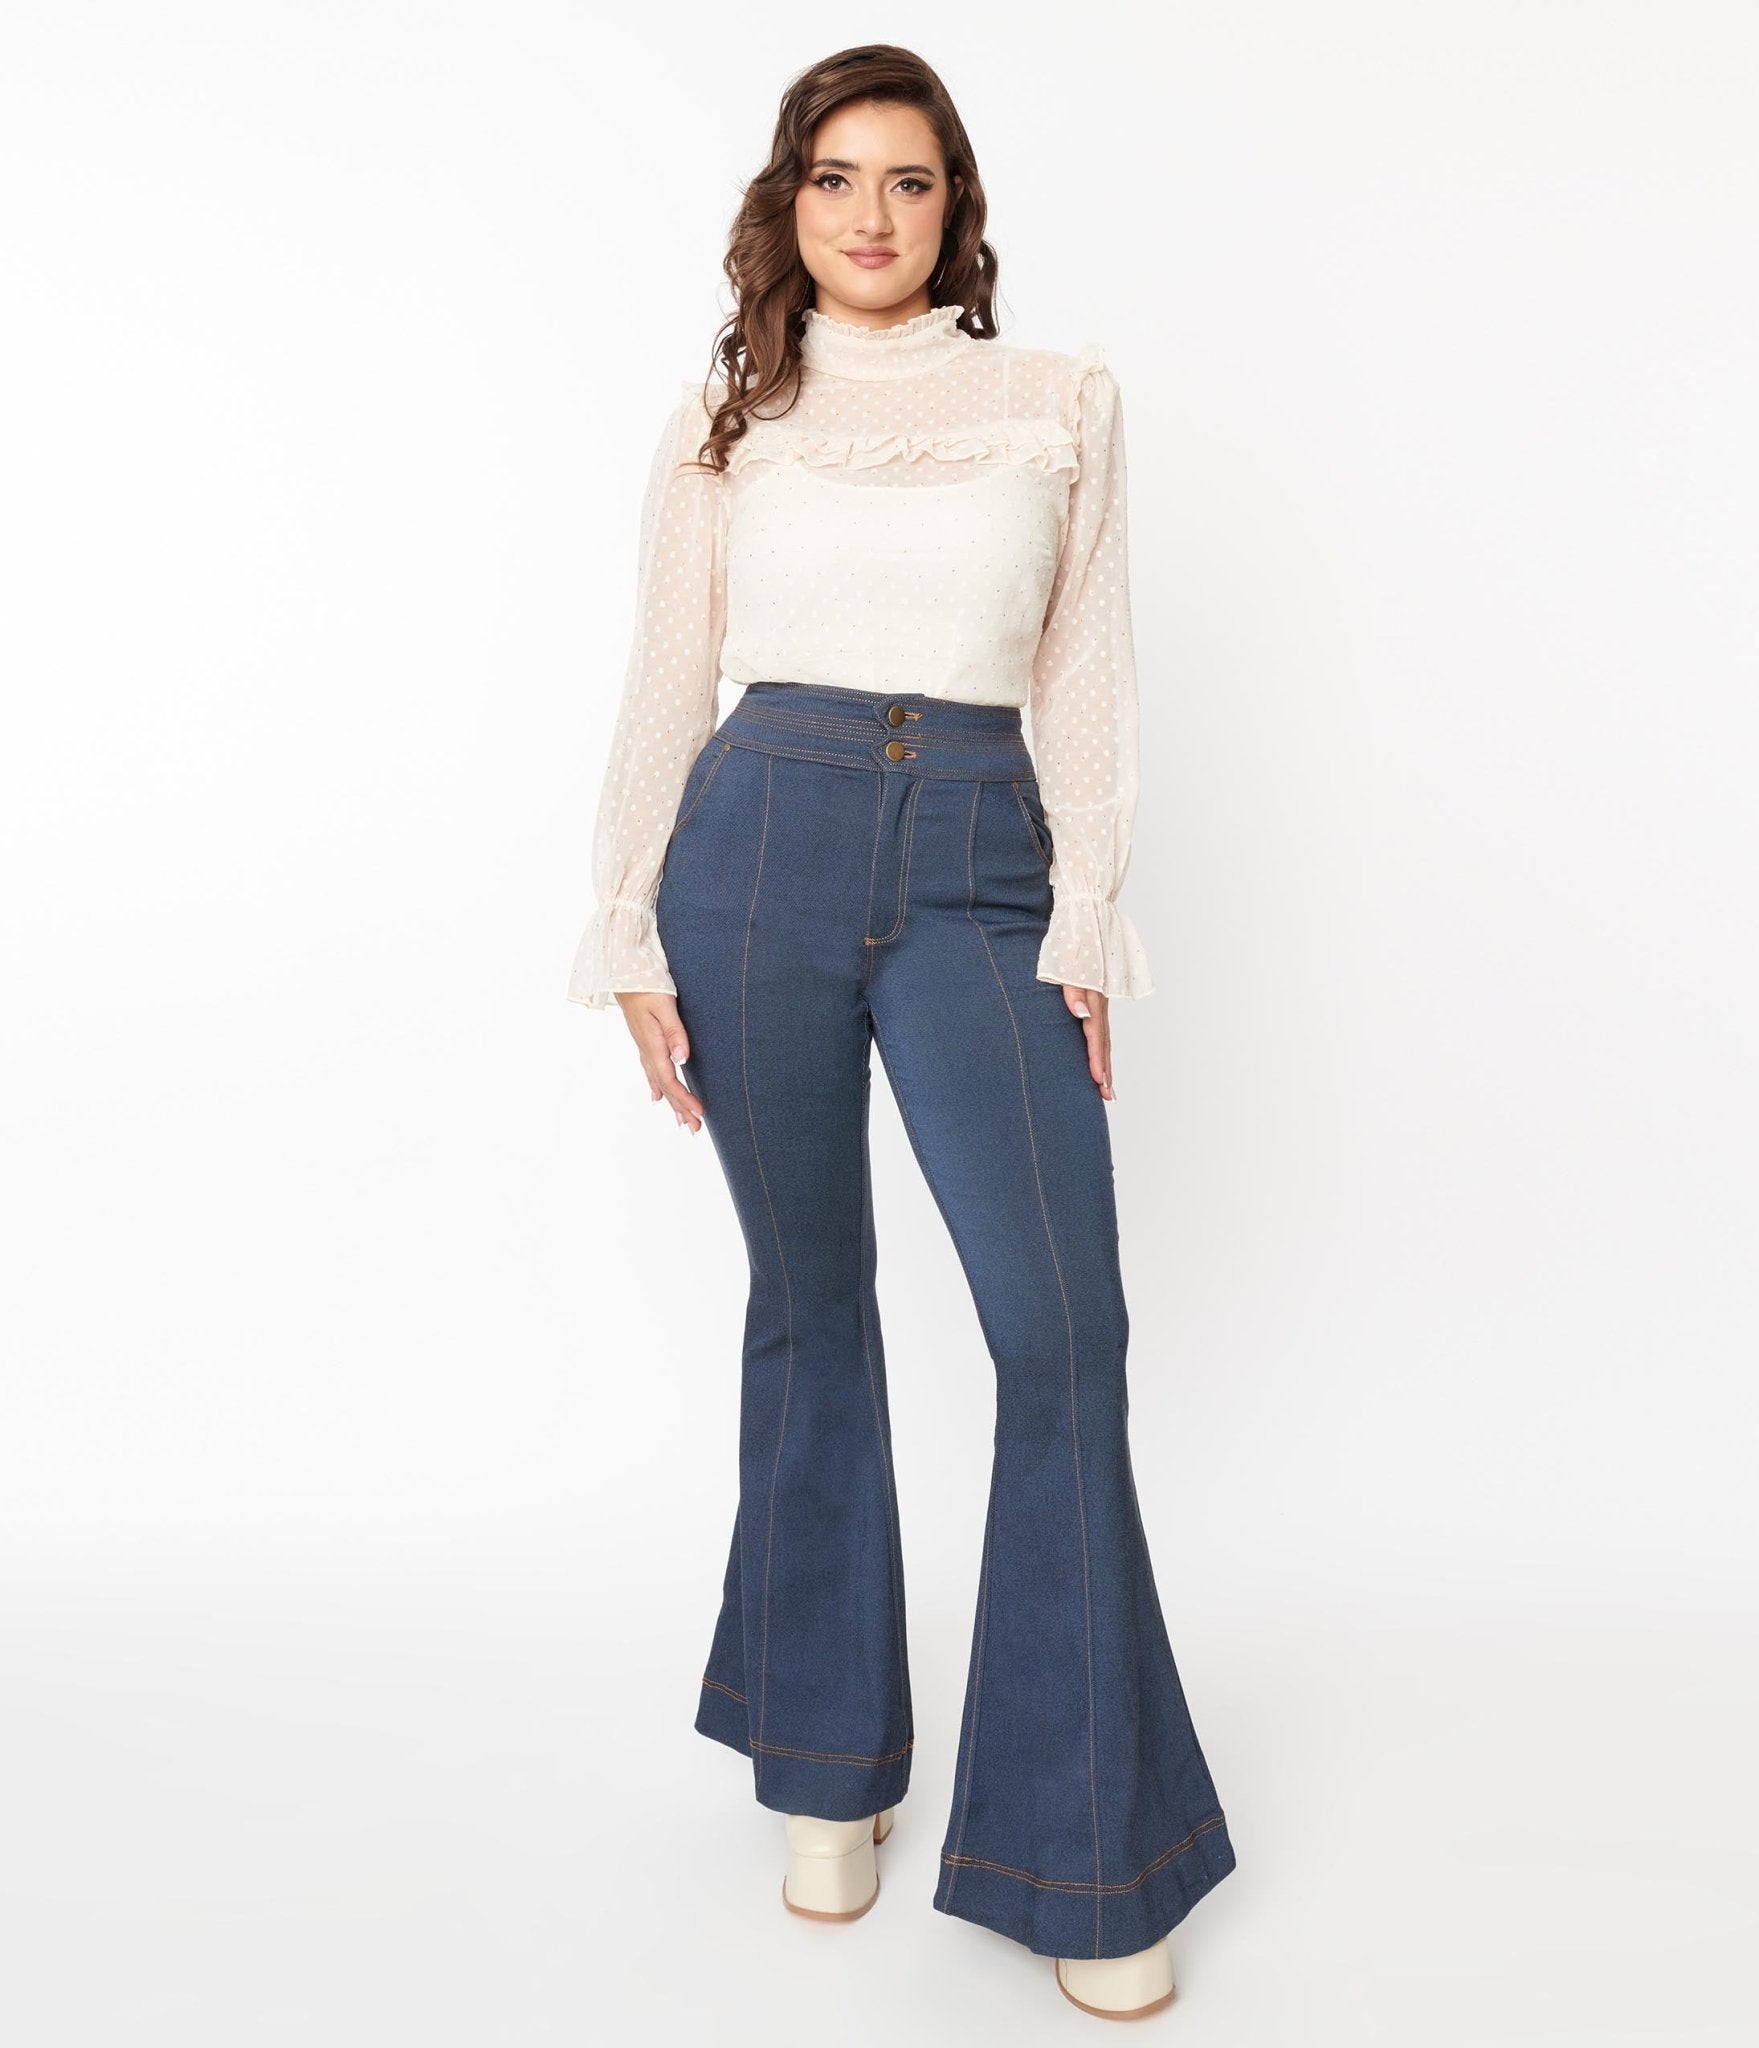 https://www.unique-vintage.com/cdn/shop/products/unique-vintage-denim-high-waisted-bell-bottom-jeans-158605.jpg?v=1703099236&width=1920